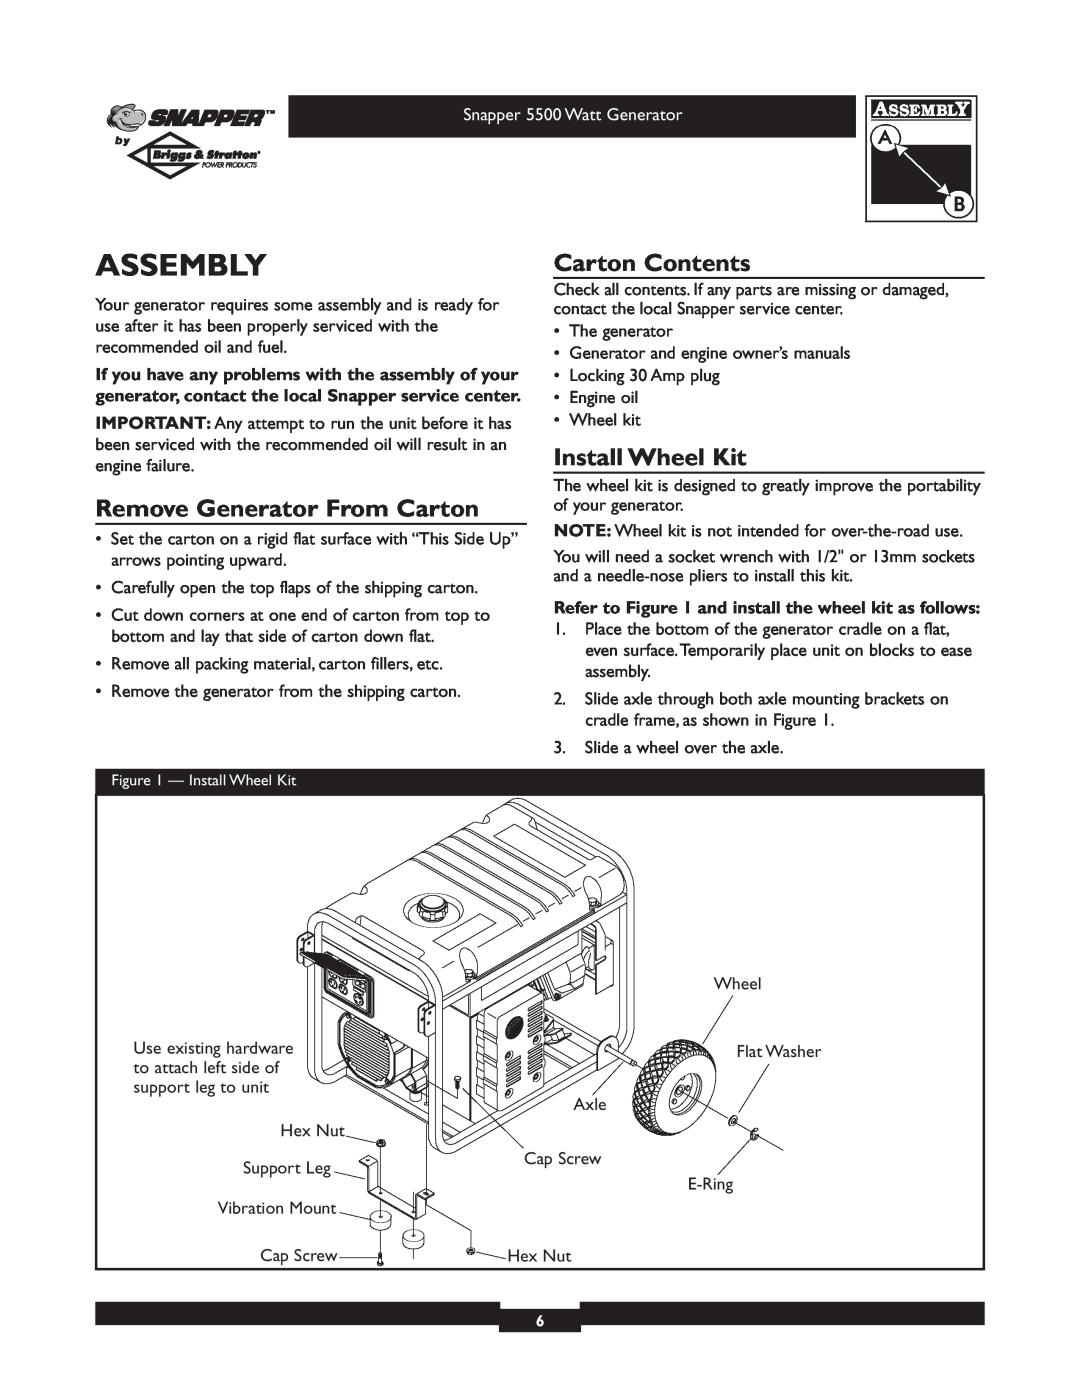 Snapper 1668-0 Assembly, Remove Generator From Carton, Carton Contents, Install Wheel Kit, Snapper 5500 Watt Generator 